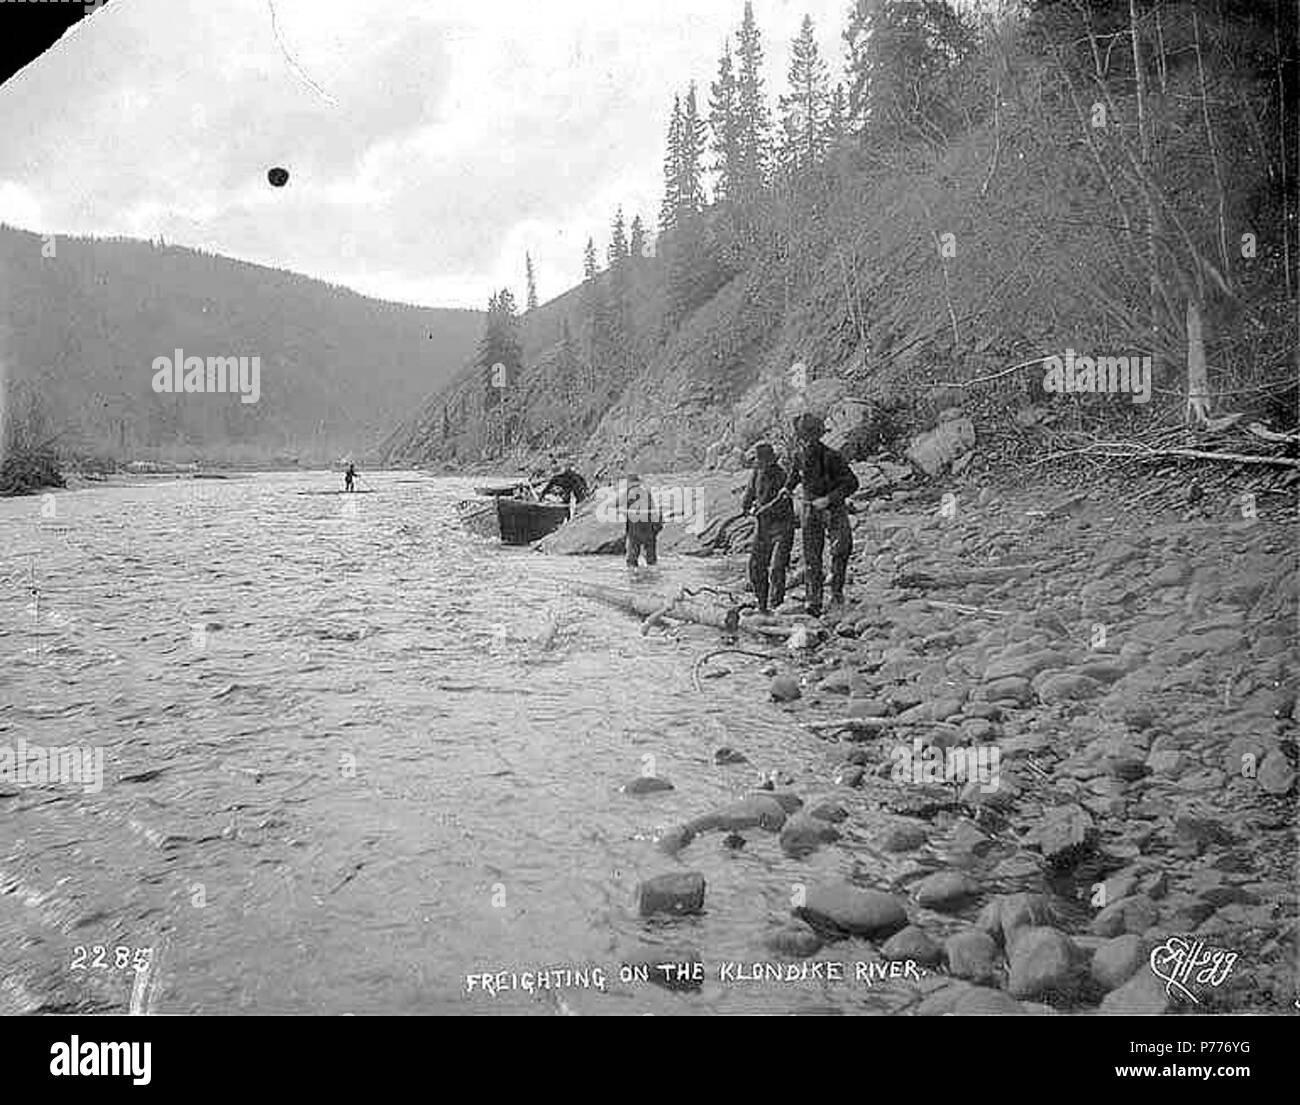 . Englisch: Vier Männer schleppen auf der Bank des Klondike River im Yukon Territory, Ca. 1898. Englisch: Legende auf Bild: "befrachtung am Klondike River". Klondike Gold Rush. Themen (LCTGM): Flüsse -- Yukon; Ruderboote -- Yukon Themen (LCSH): Klondike River (Yukon). ca. 1898 5 vier Männer schleppen auf der Bank des Klondike River im Yukon Territory, ca 1898 HEGG (388) Stockfoto